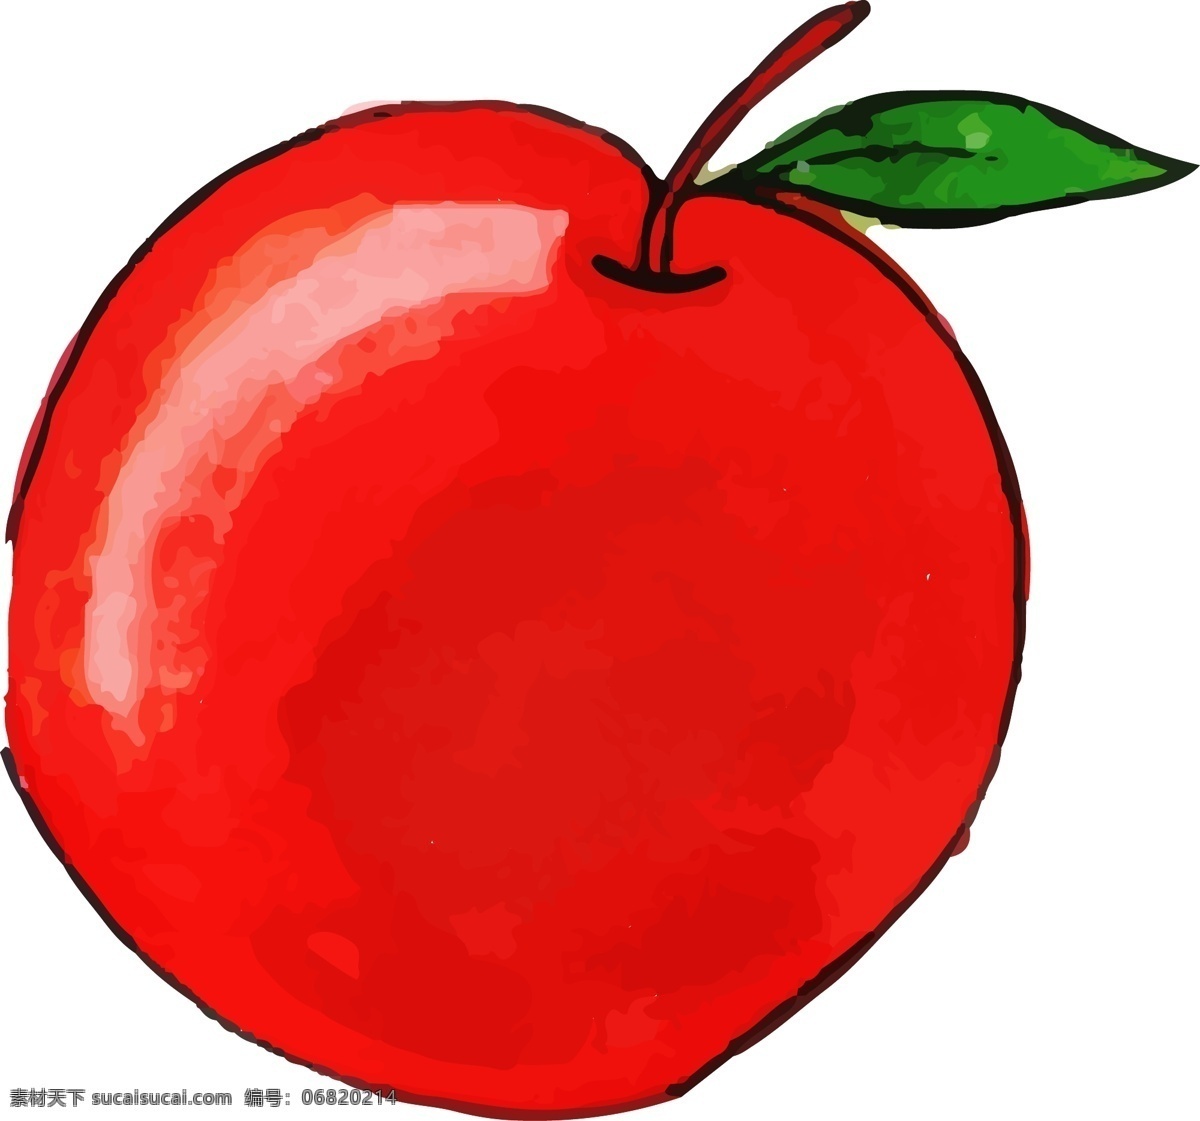 卡通 水彩 红色 苹果 矢量 可爱 可爱苹果 卡通苹果 水彩苹果 手绘 手绘苹果 红色苹果